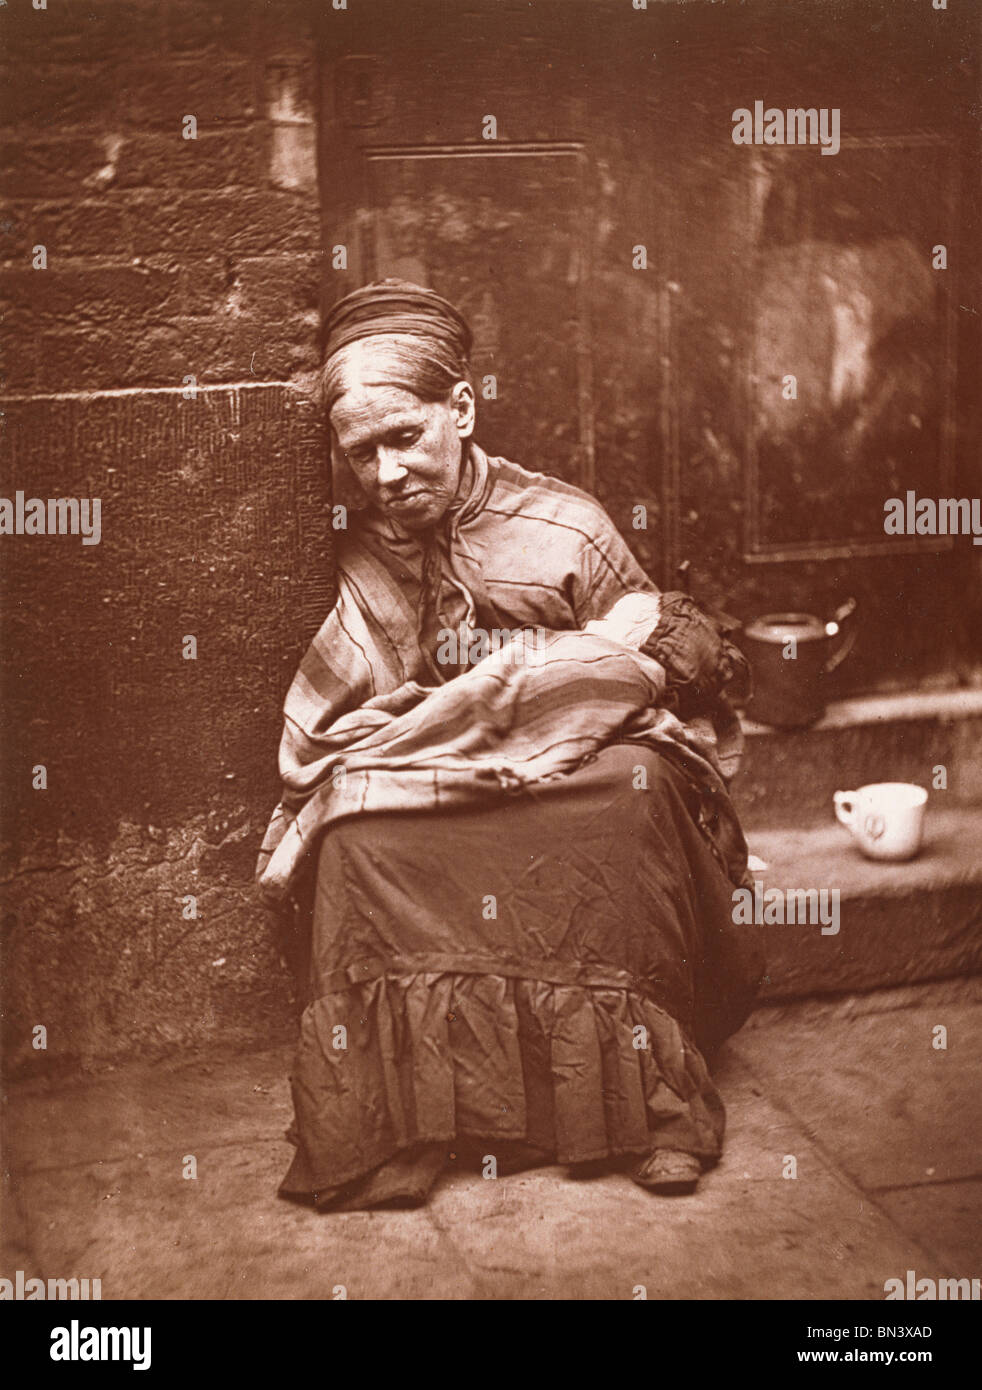 Il crawler di John Thomson. Londra, Inghilterra, fine del XIX secolo Foto Stock